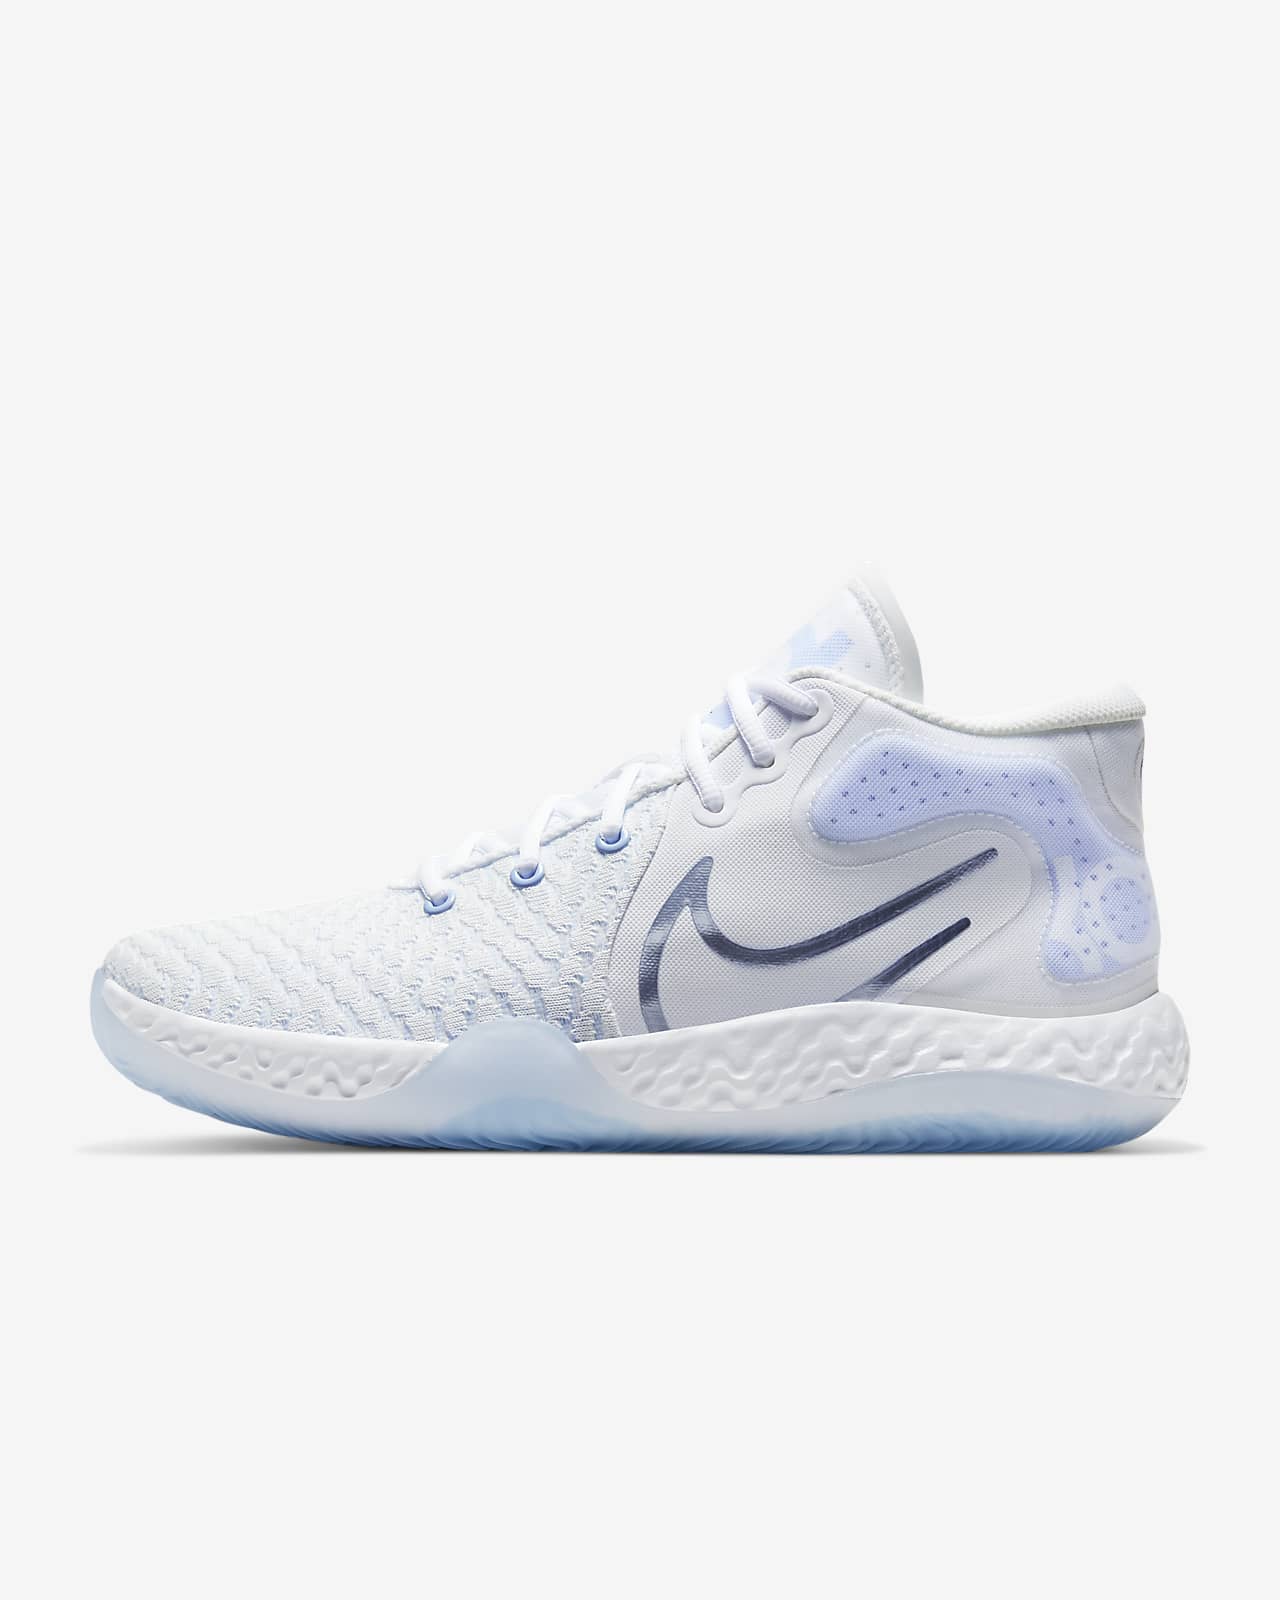 KD Trey 5 VIII Basketball Shoe. Nike.com